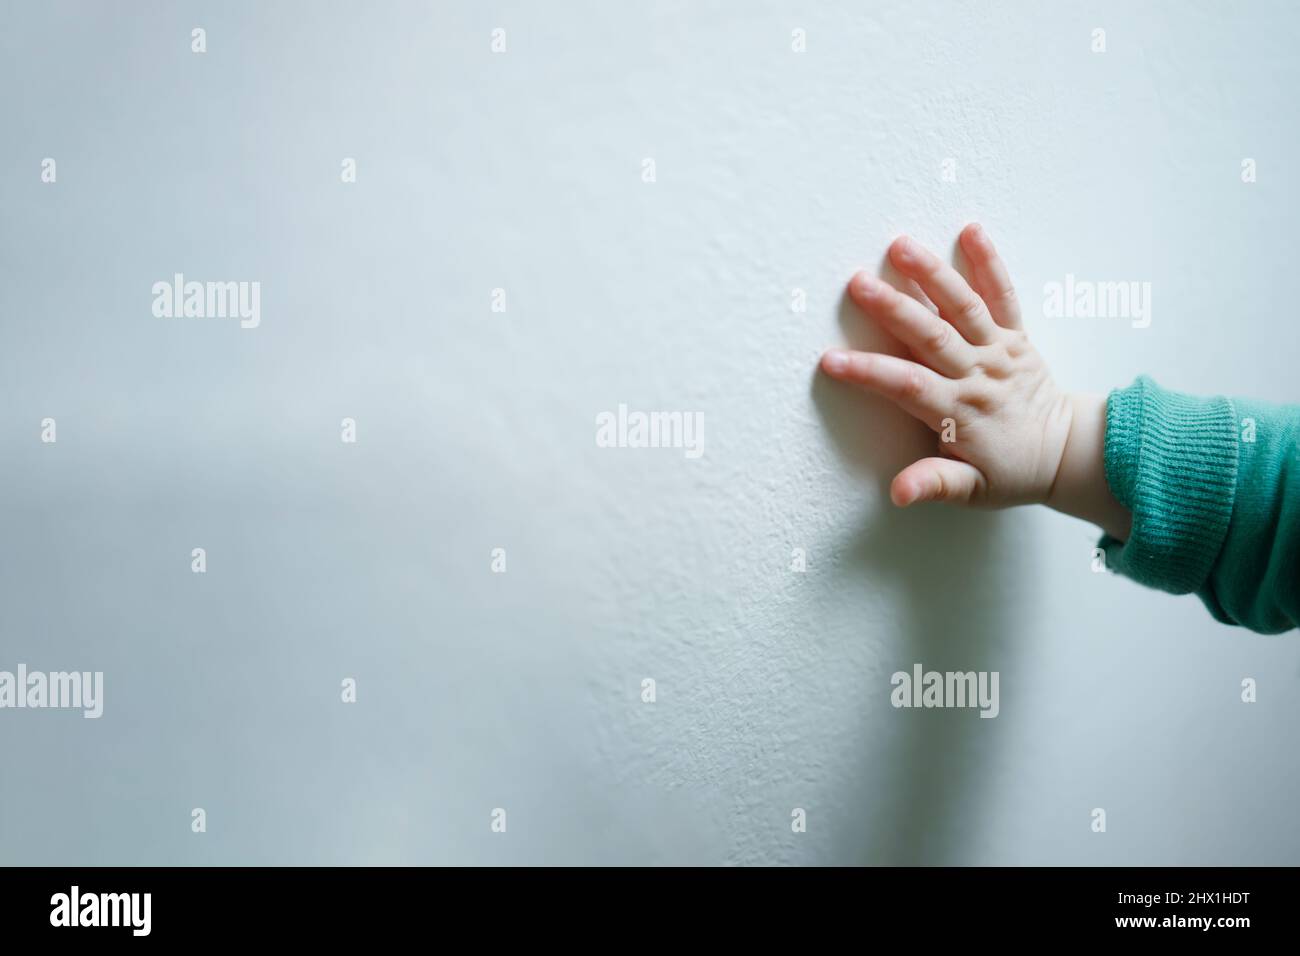 Un enfant main sur un mur blanc, le concept d'aide humanitaire Banque D'Images